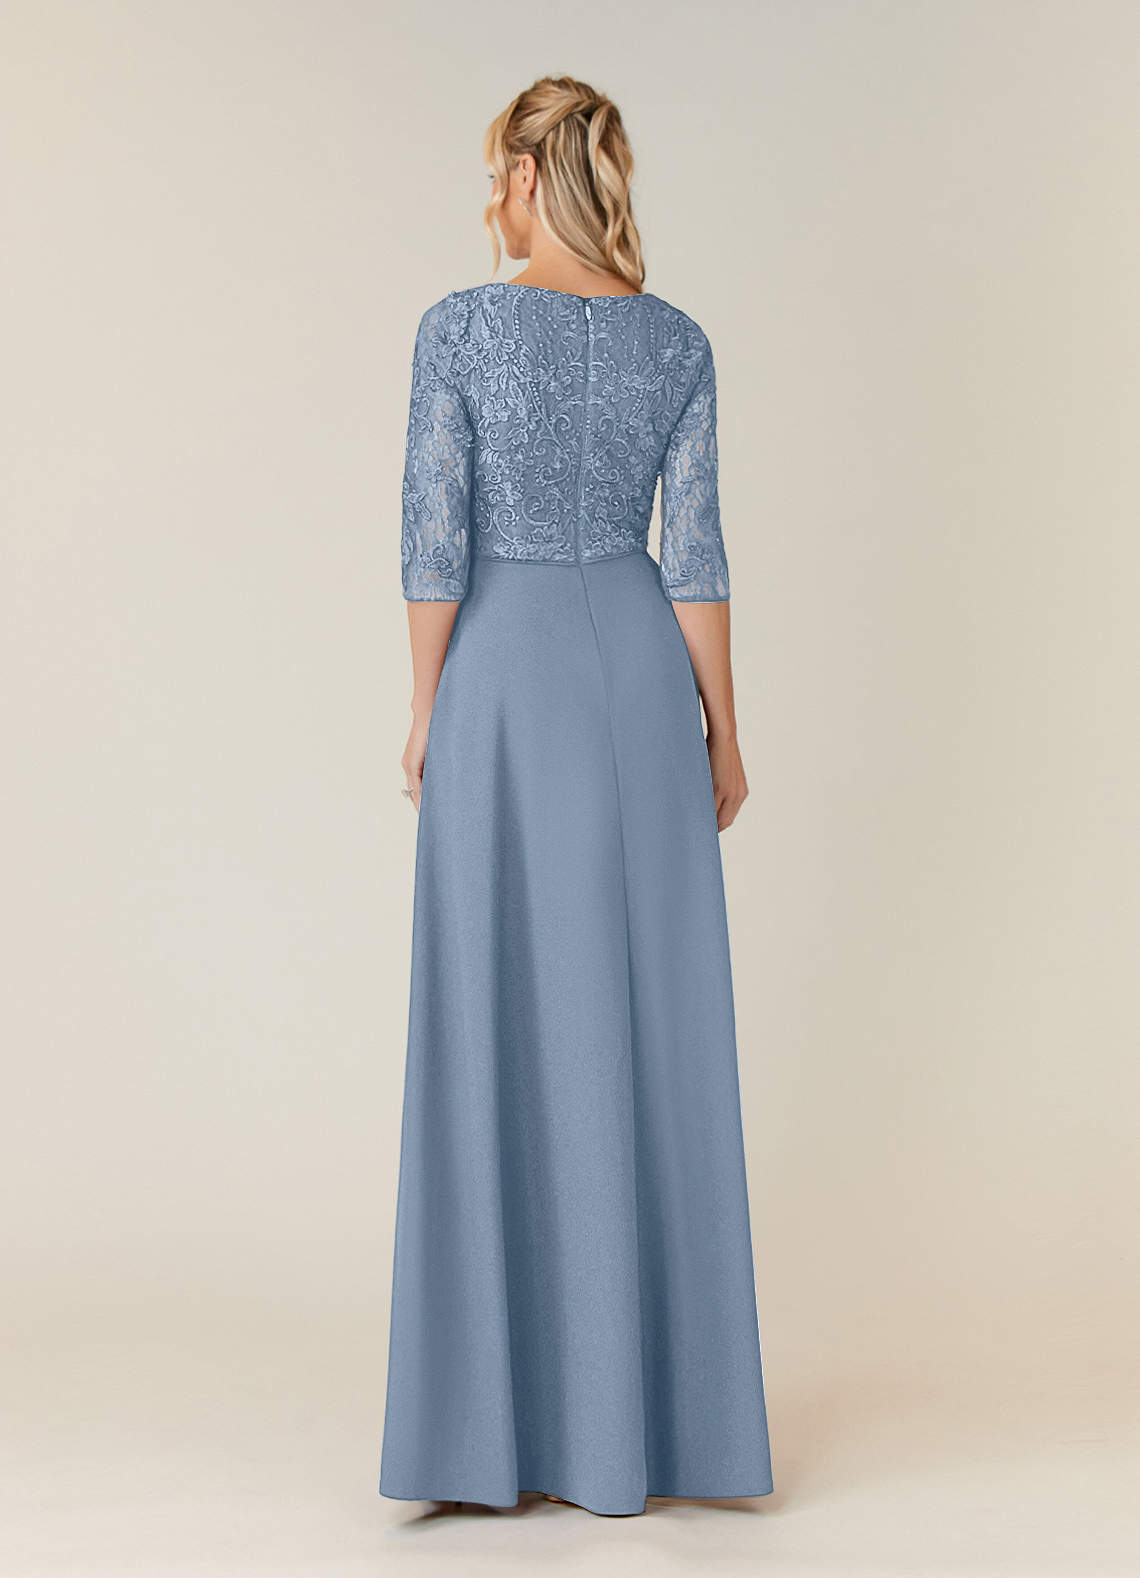 Dusty Blue Azazie Leith A-Line Lace Floor-Length Dress | Azazie